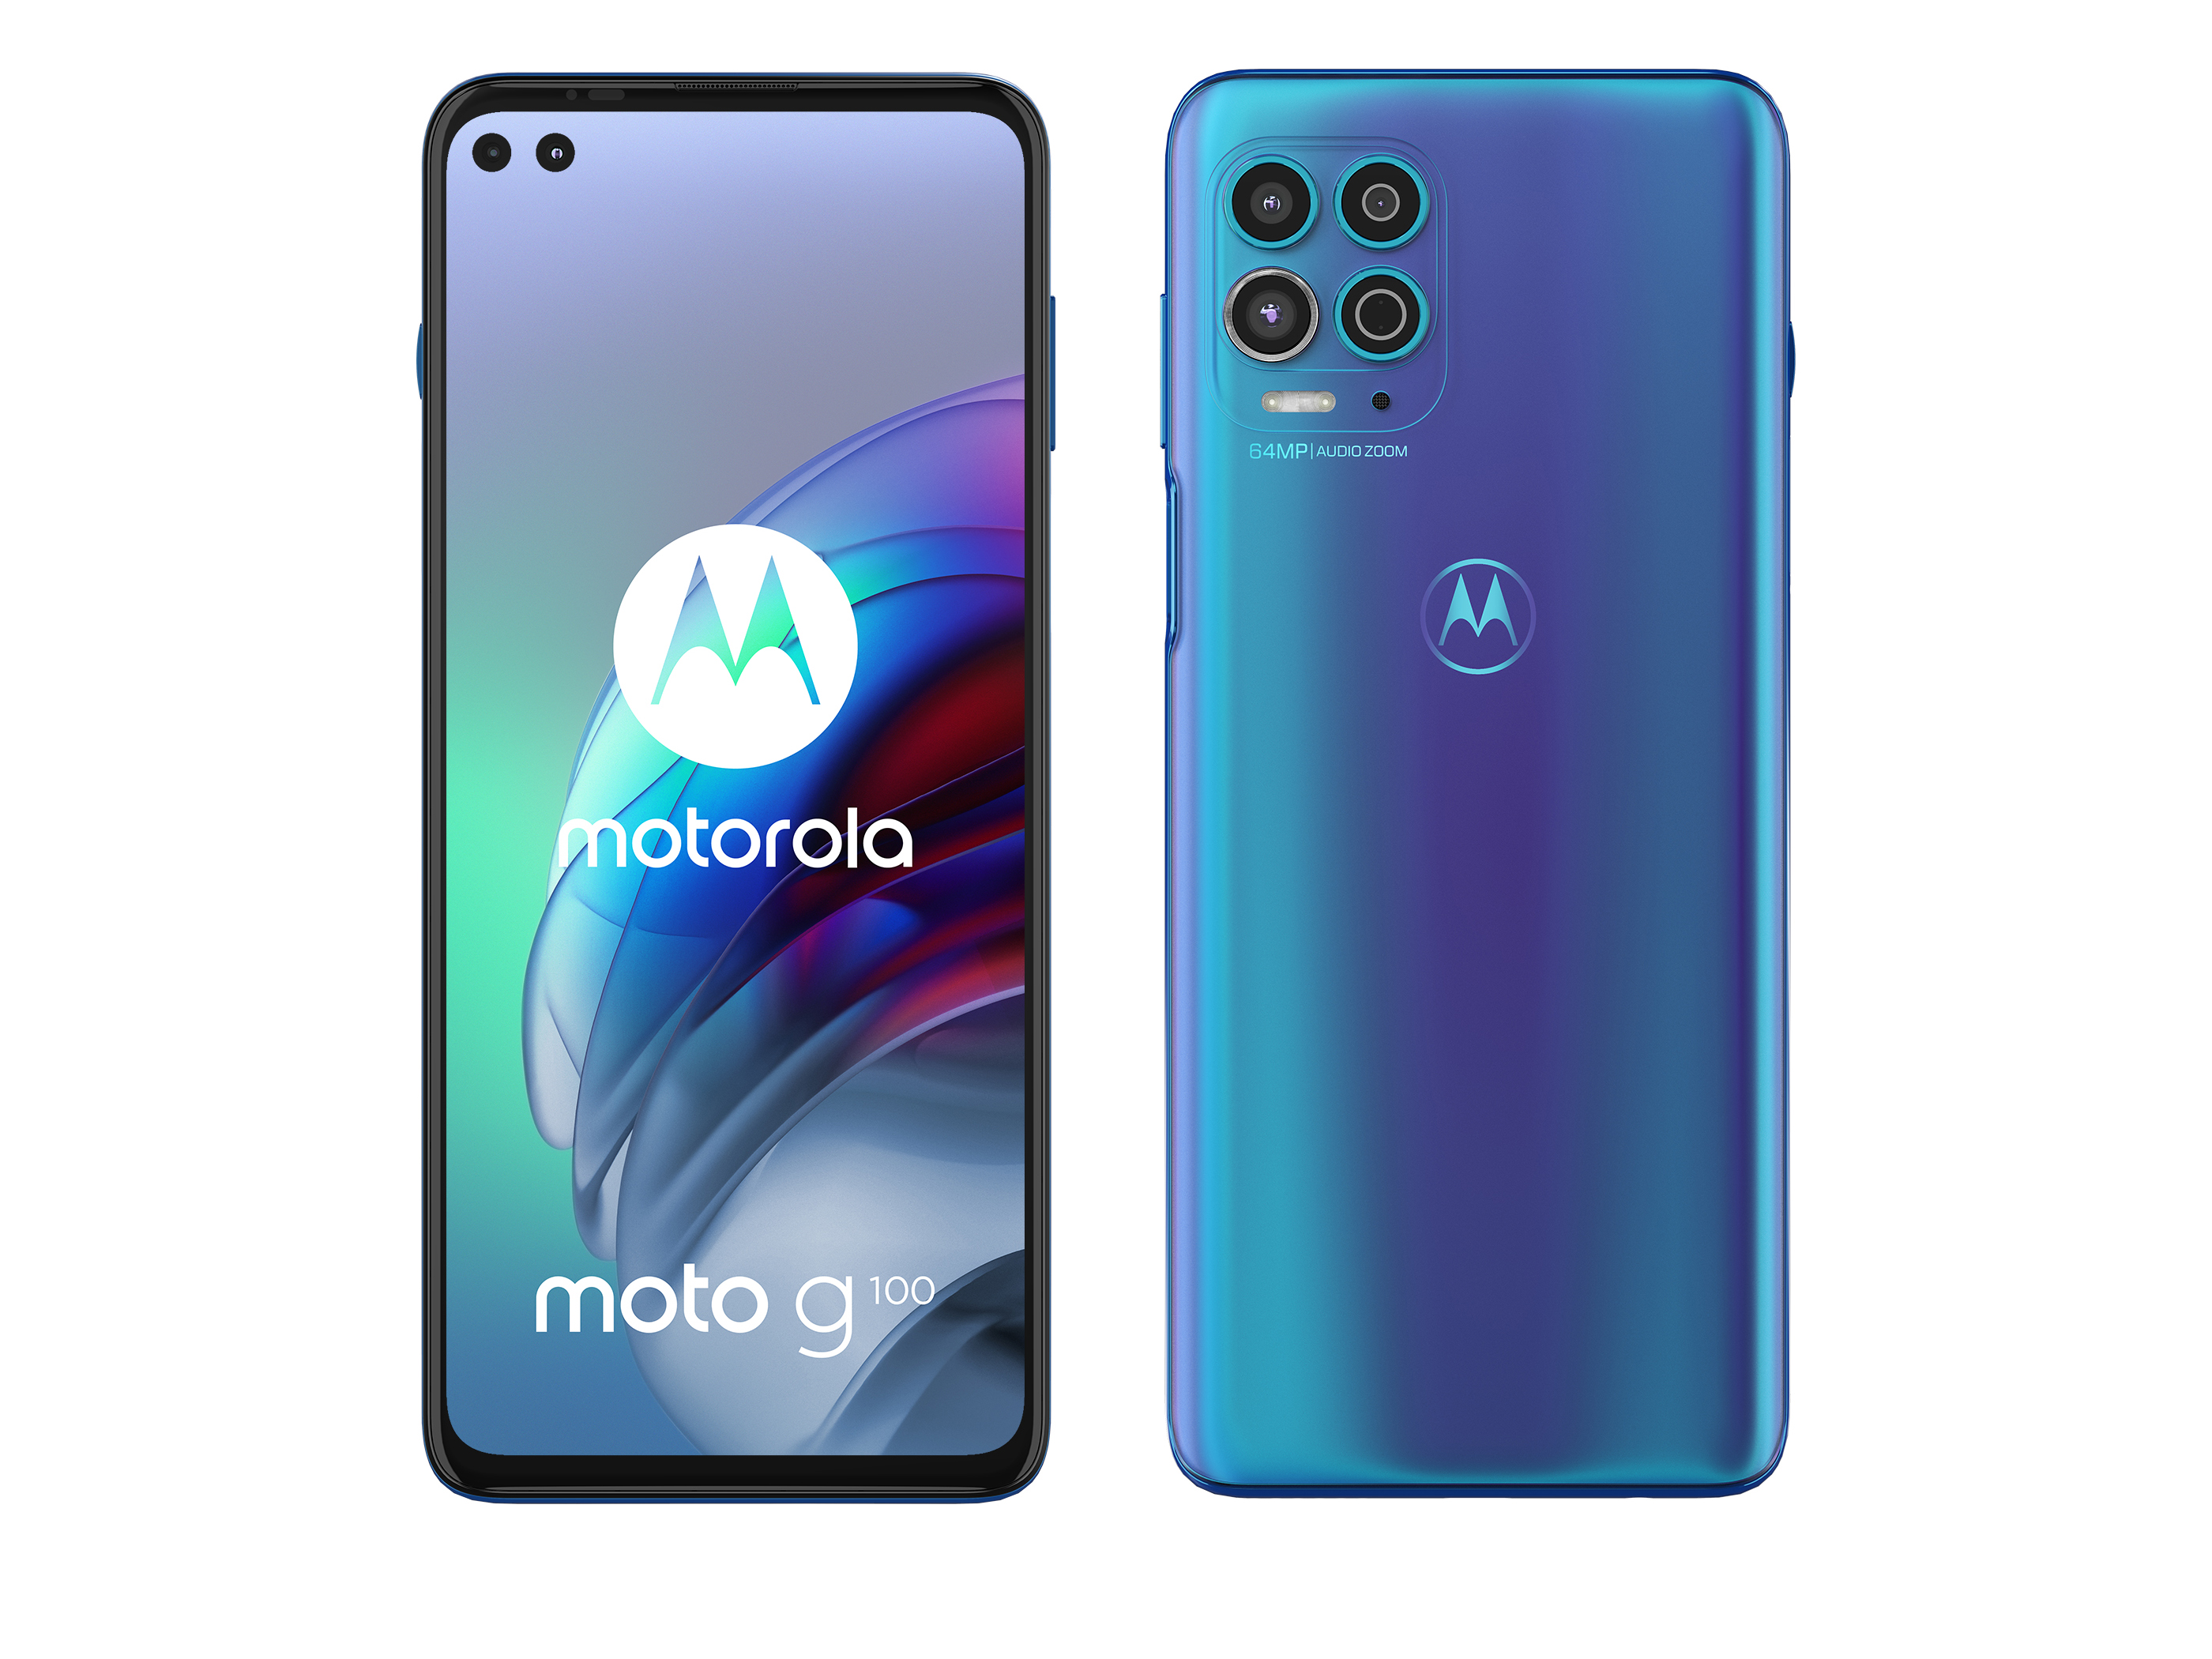 Aftrekken Demon beginnen Motorola Moto G100 smartphone review: Fast 5G mobile phone as PC  replacement - NotebookCheck.net Reviews